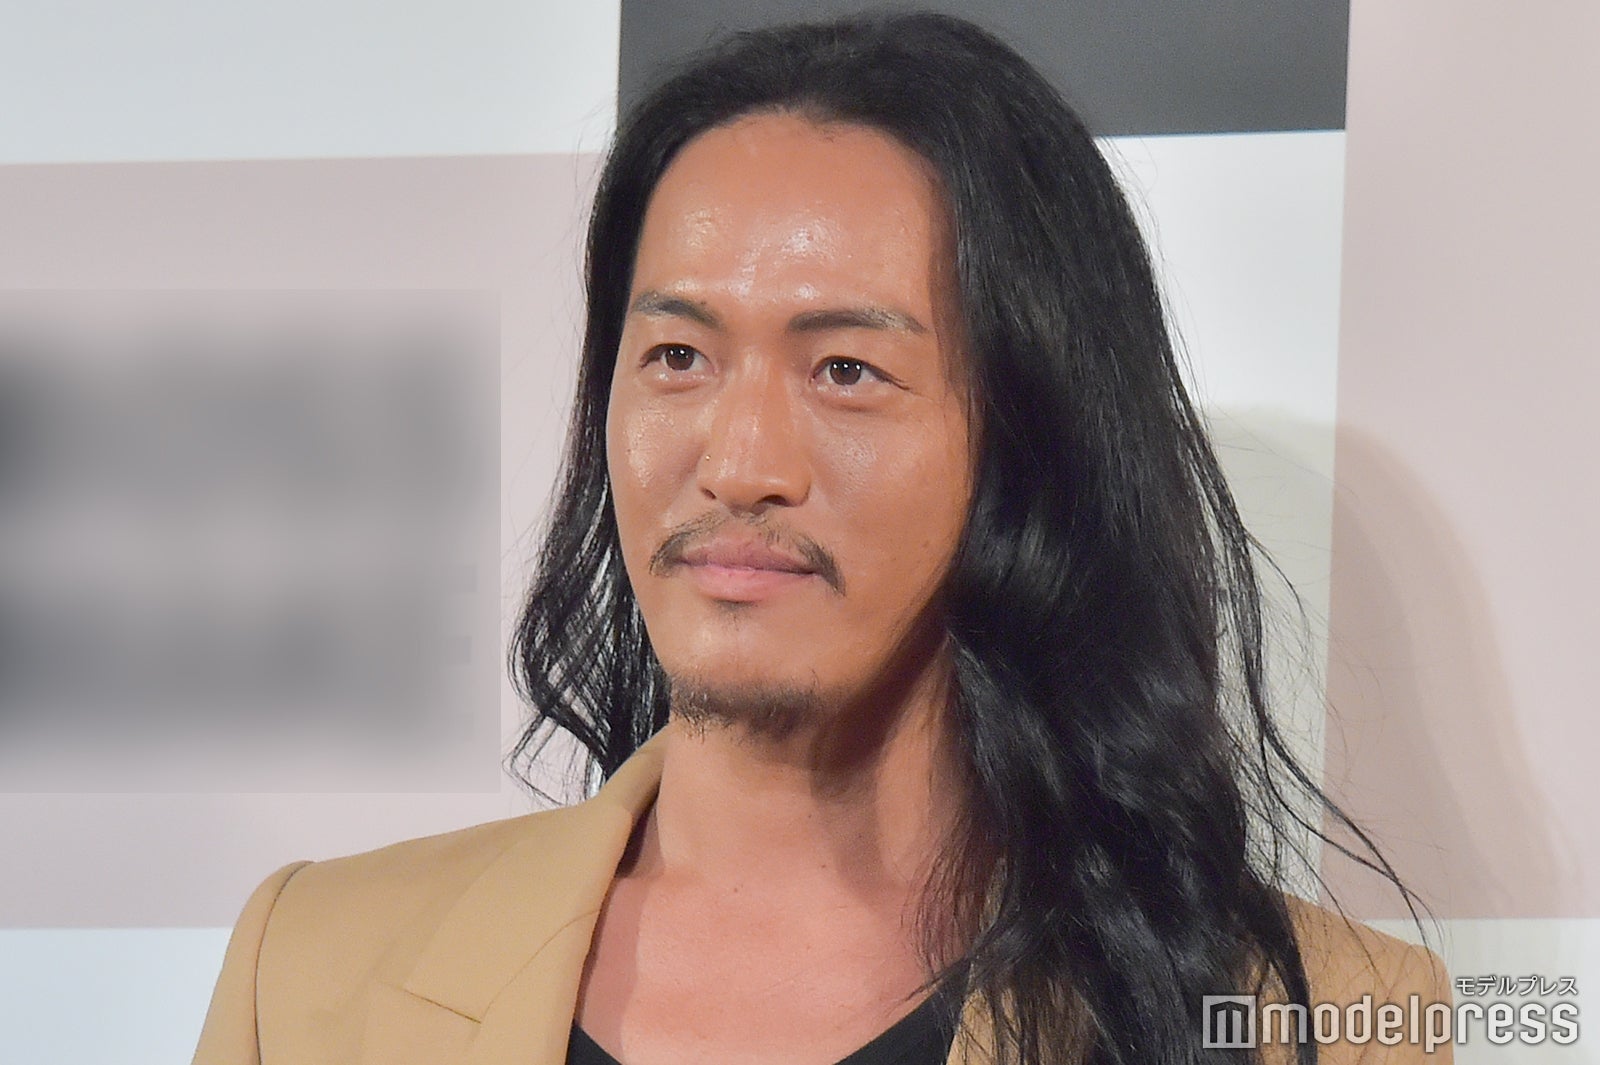 逮捕報道のヘアメイクアップアーティスト Junjun容疑者 有名モデル達のメイク担当 ボス顔メイク 話題に モデルプレス